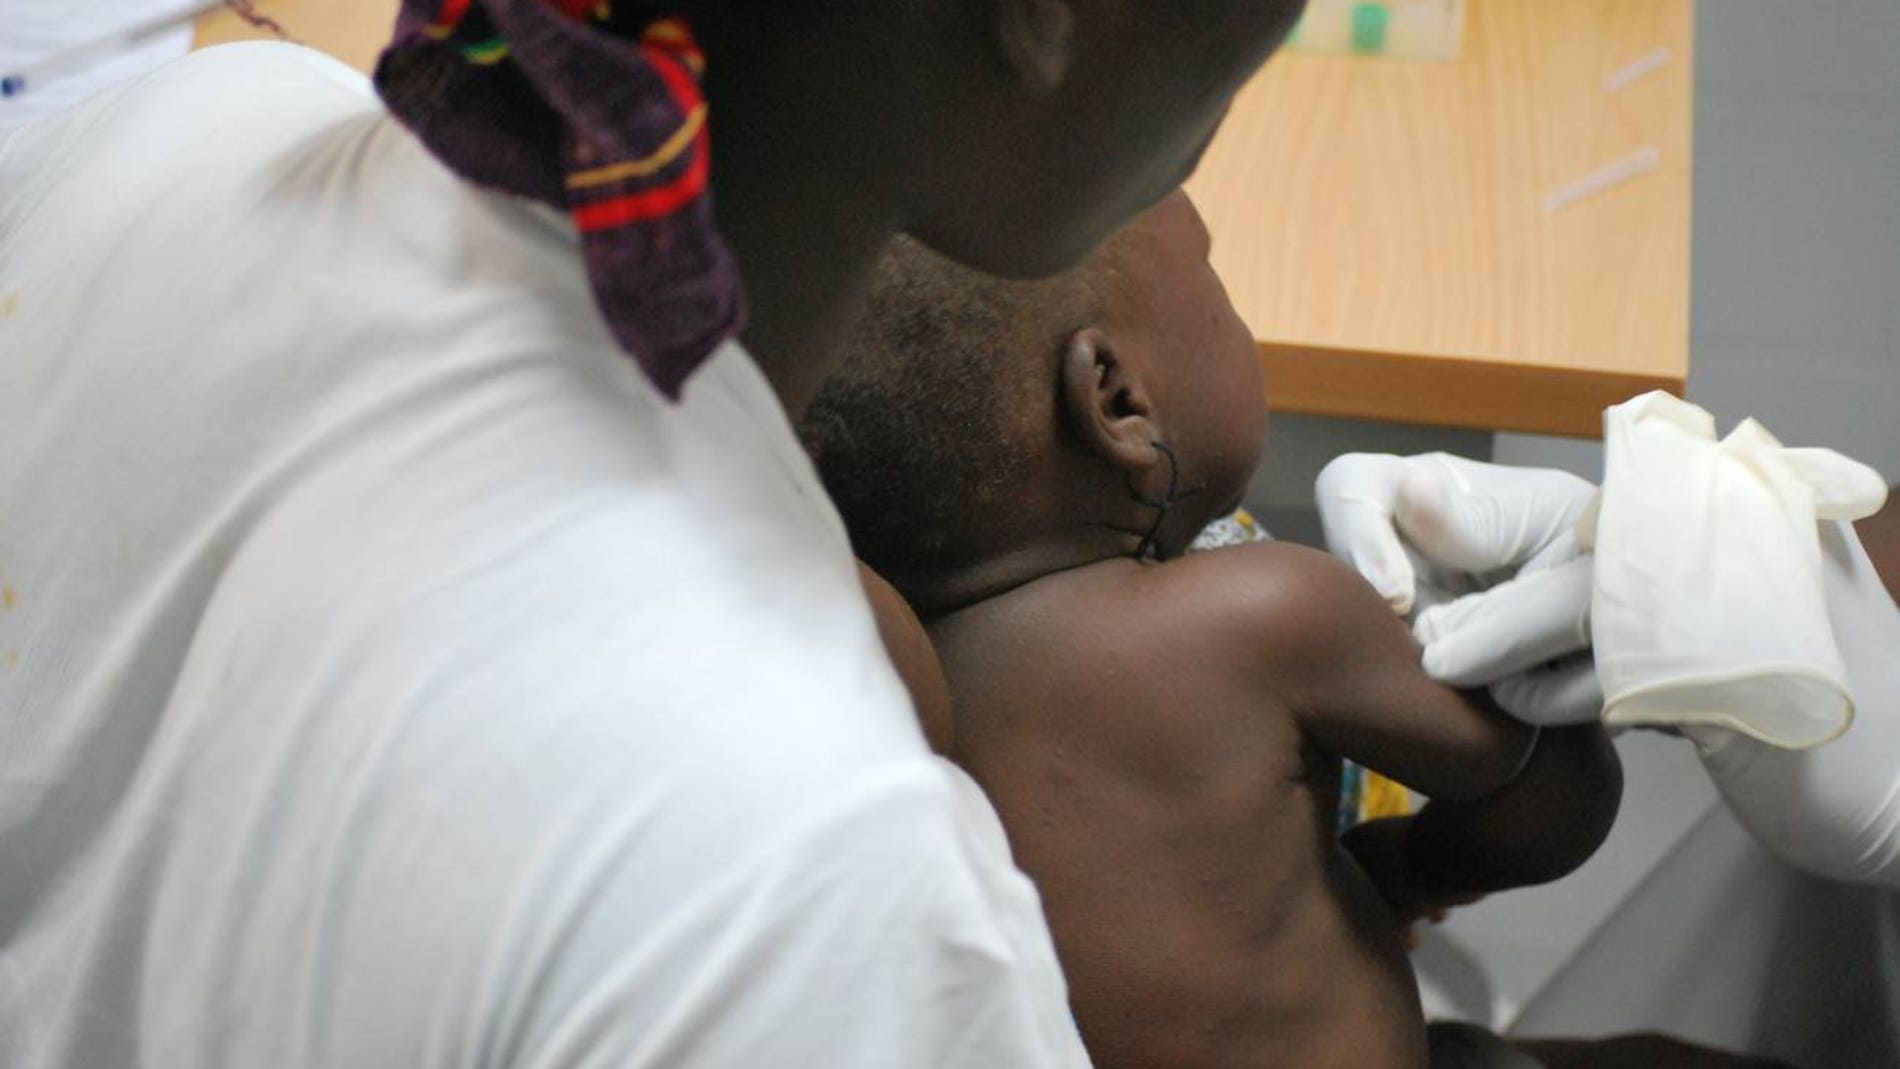 Dos vacunas atenuadas con farmacos inducen altos niveles de proteccion contra la malaria